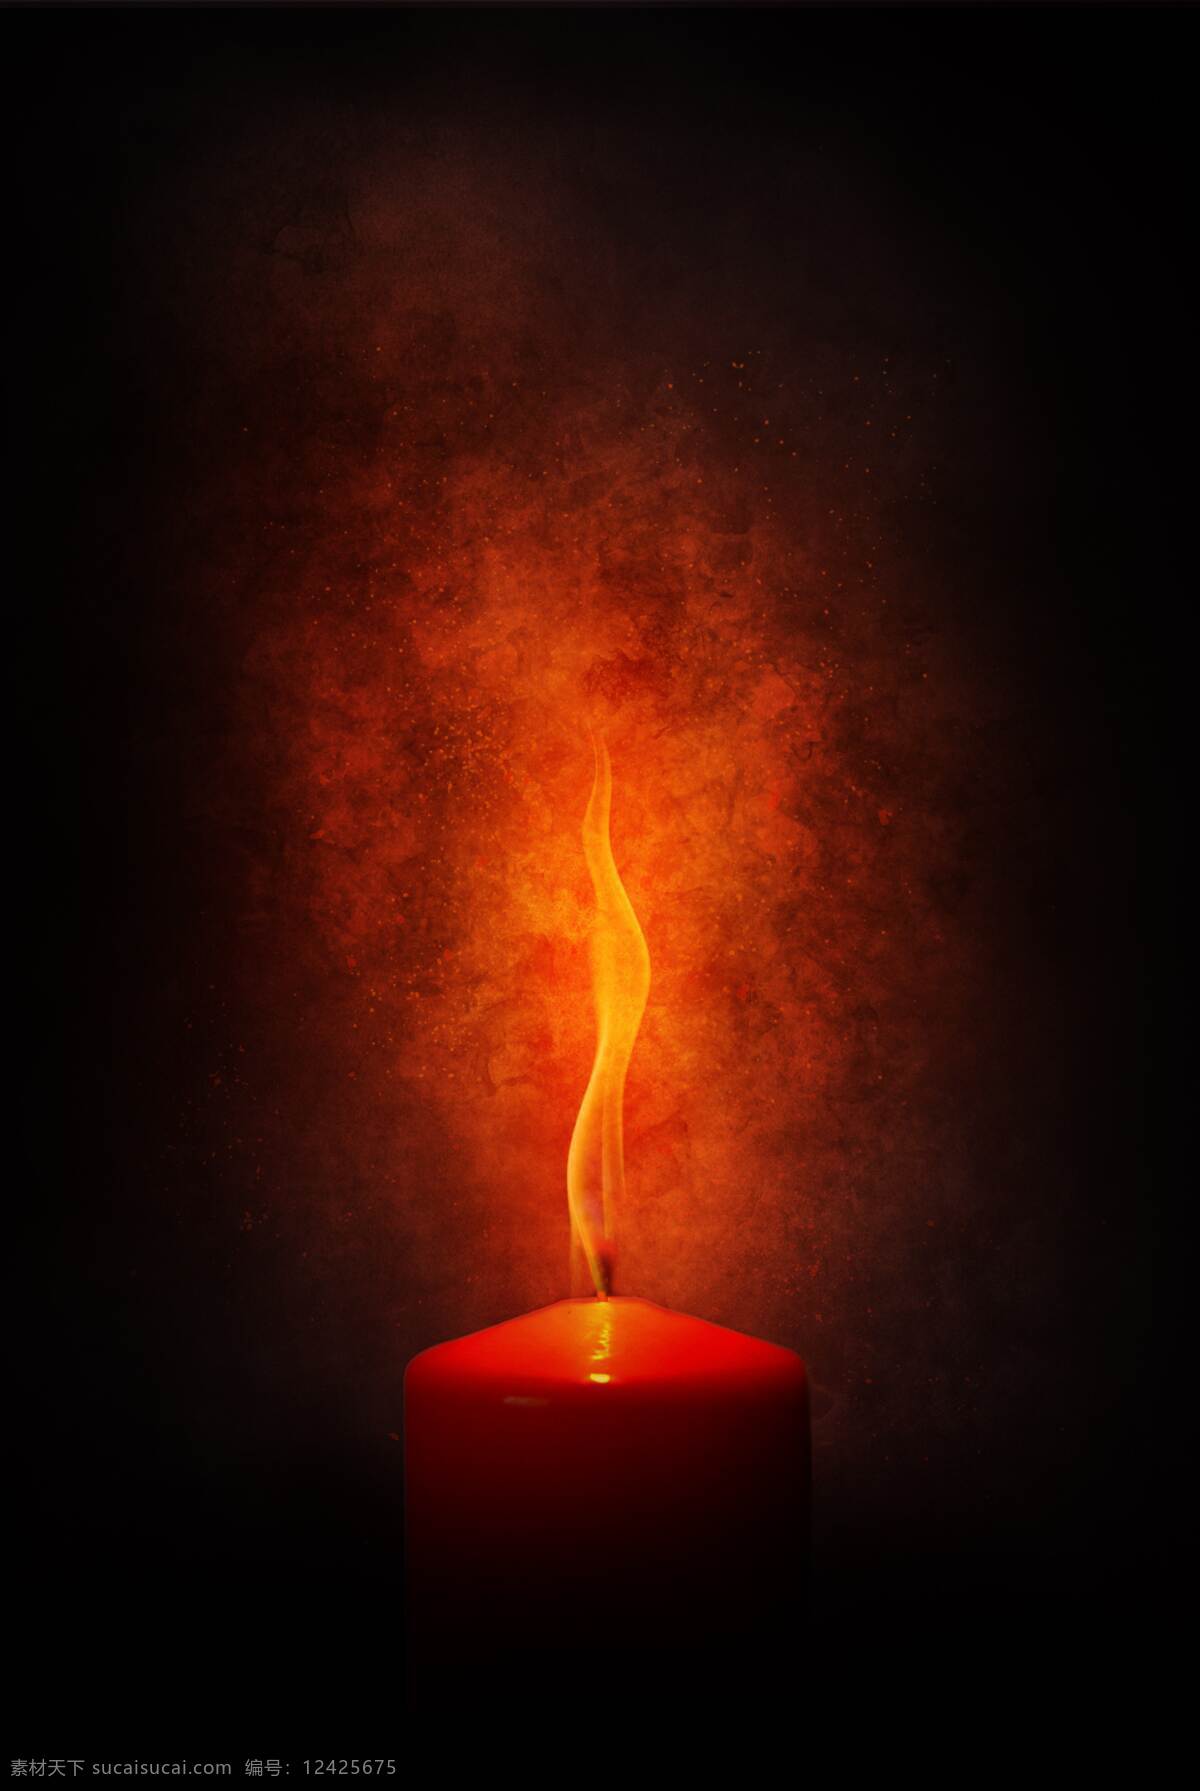 蜡烛光 黑色 背景 橘红色 蜡烛 光 生活百科 生活素材